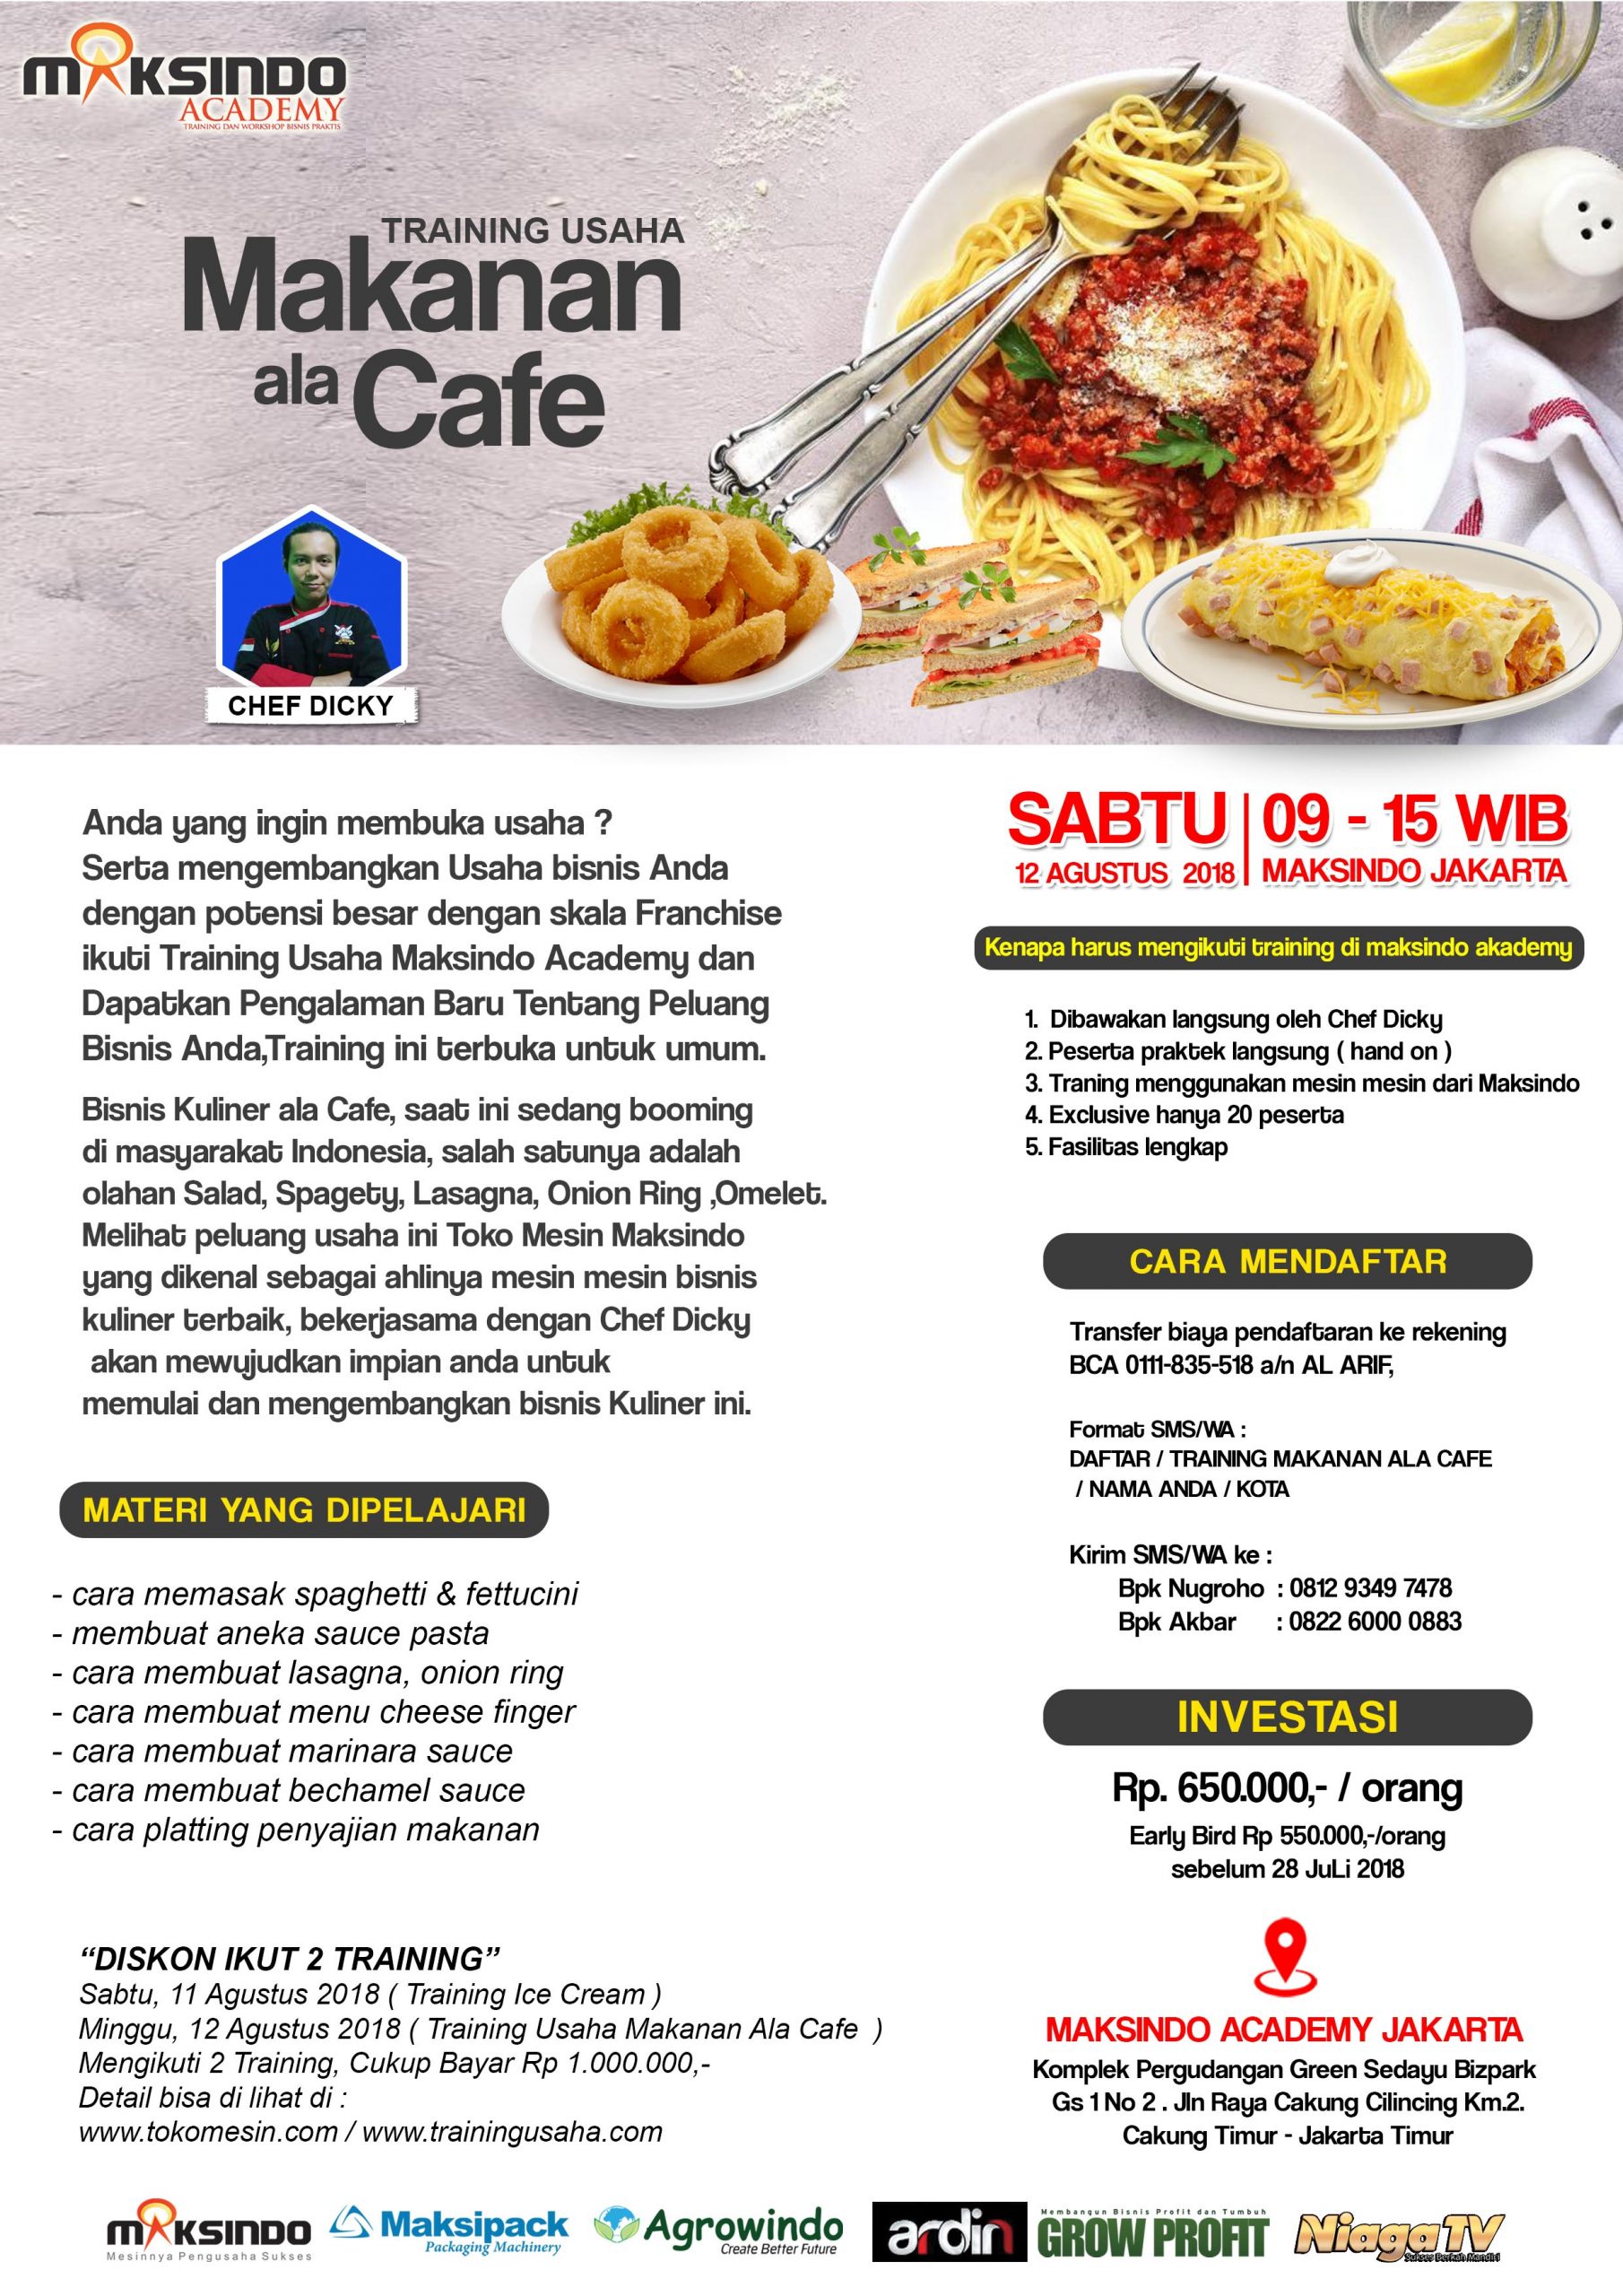 Training Usaha Makanan Ala Cafe, Minggu 12 Agustus 2018